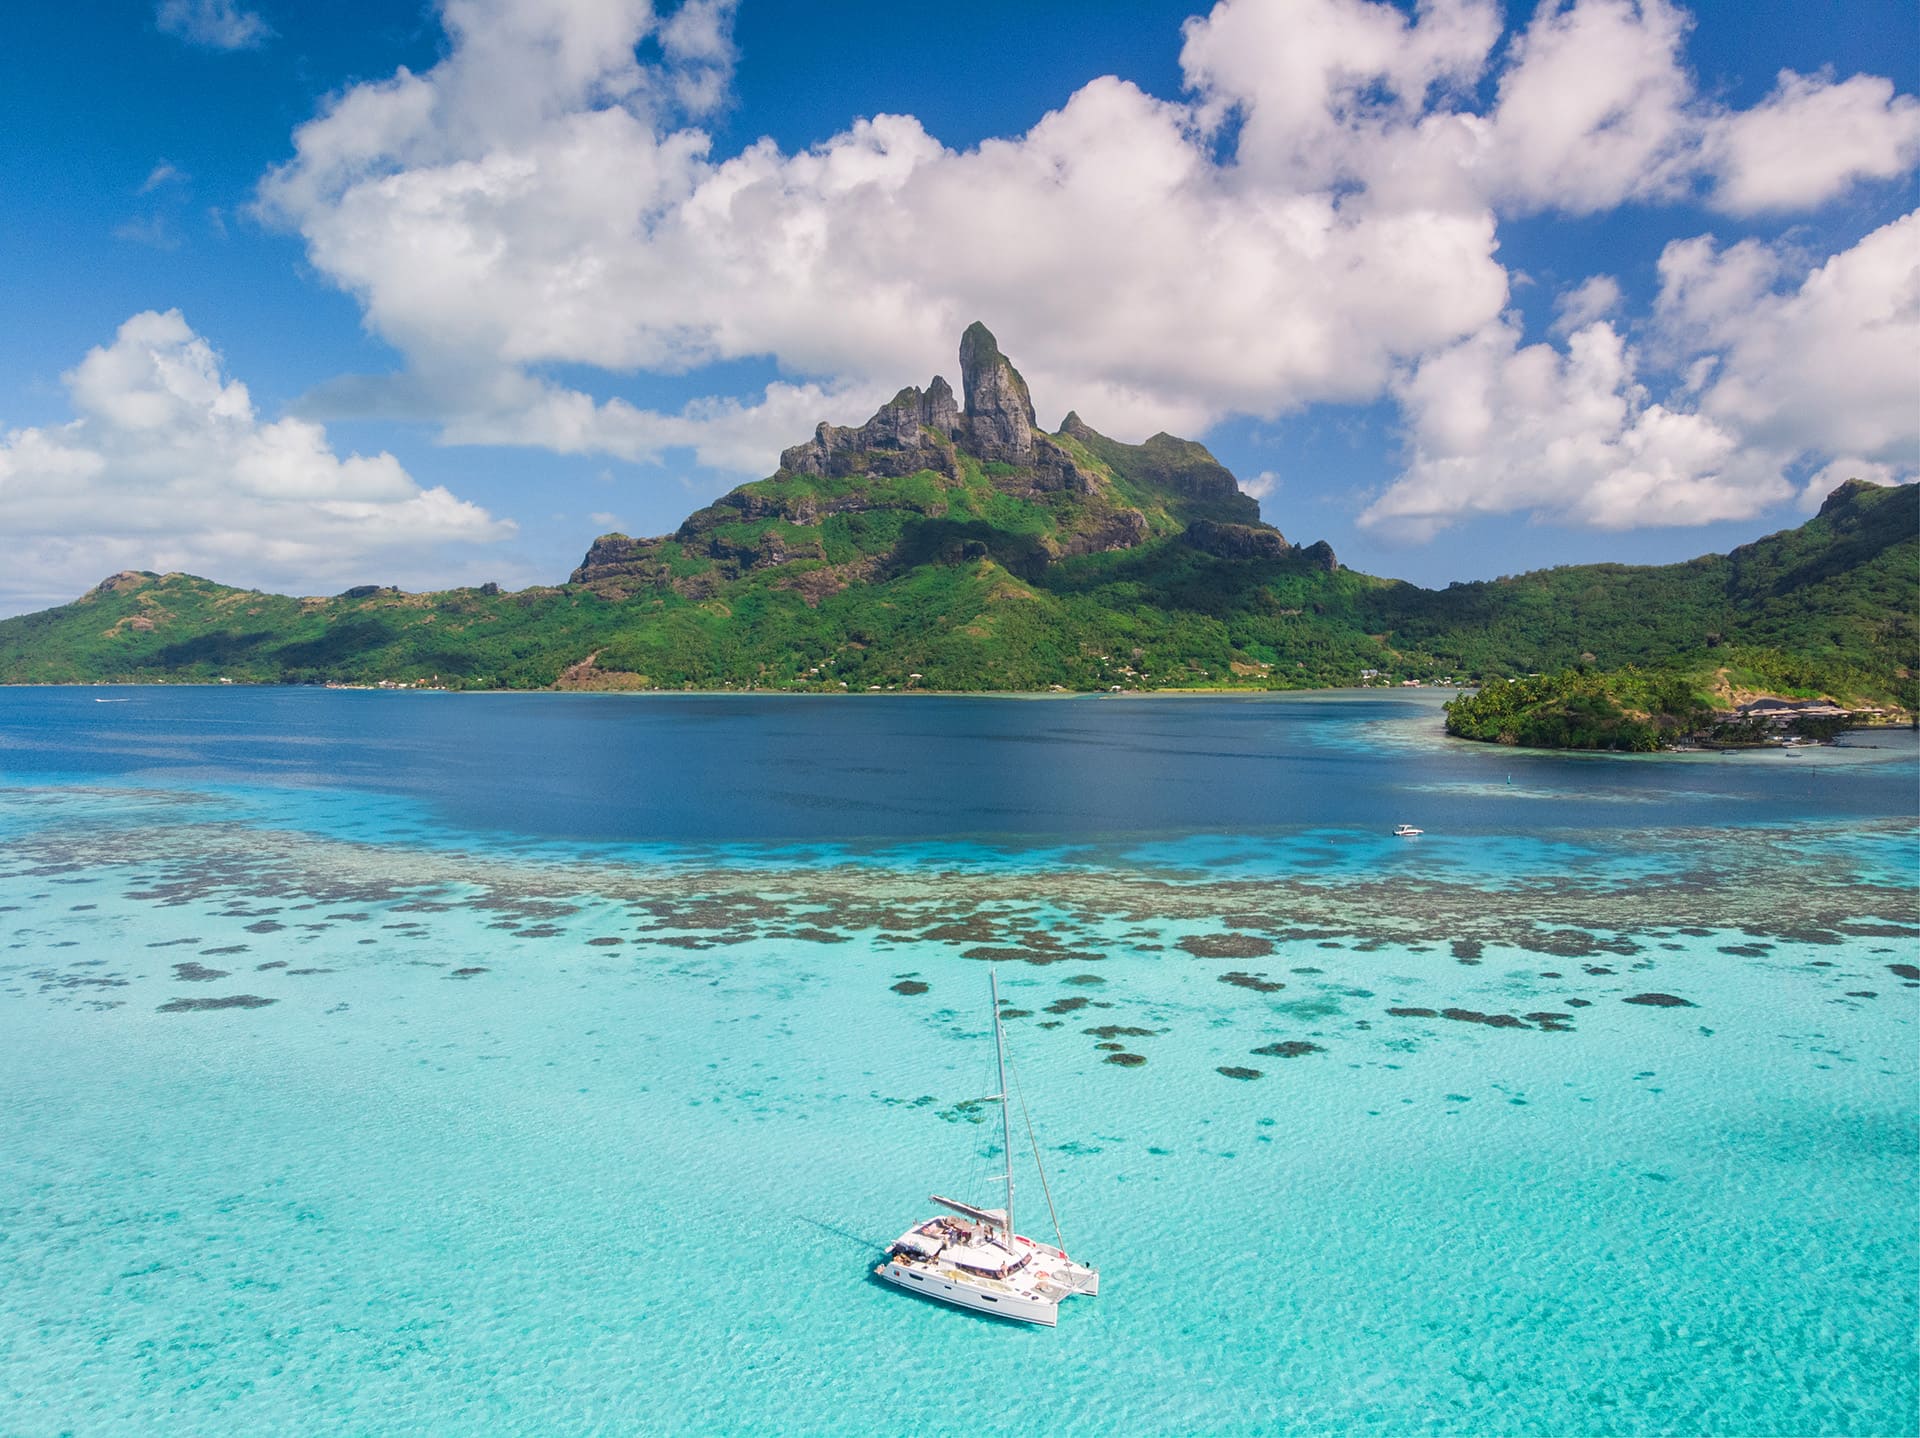 Sailing French Polynesia